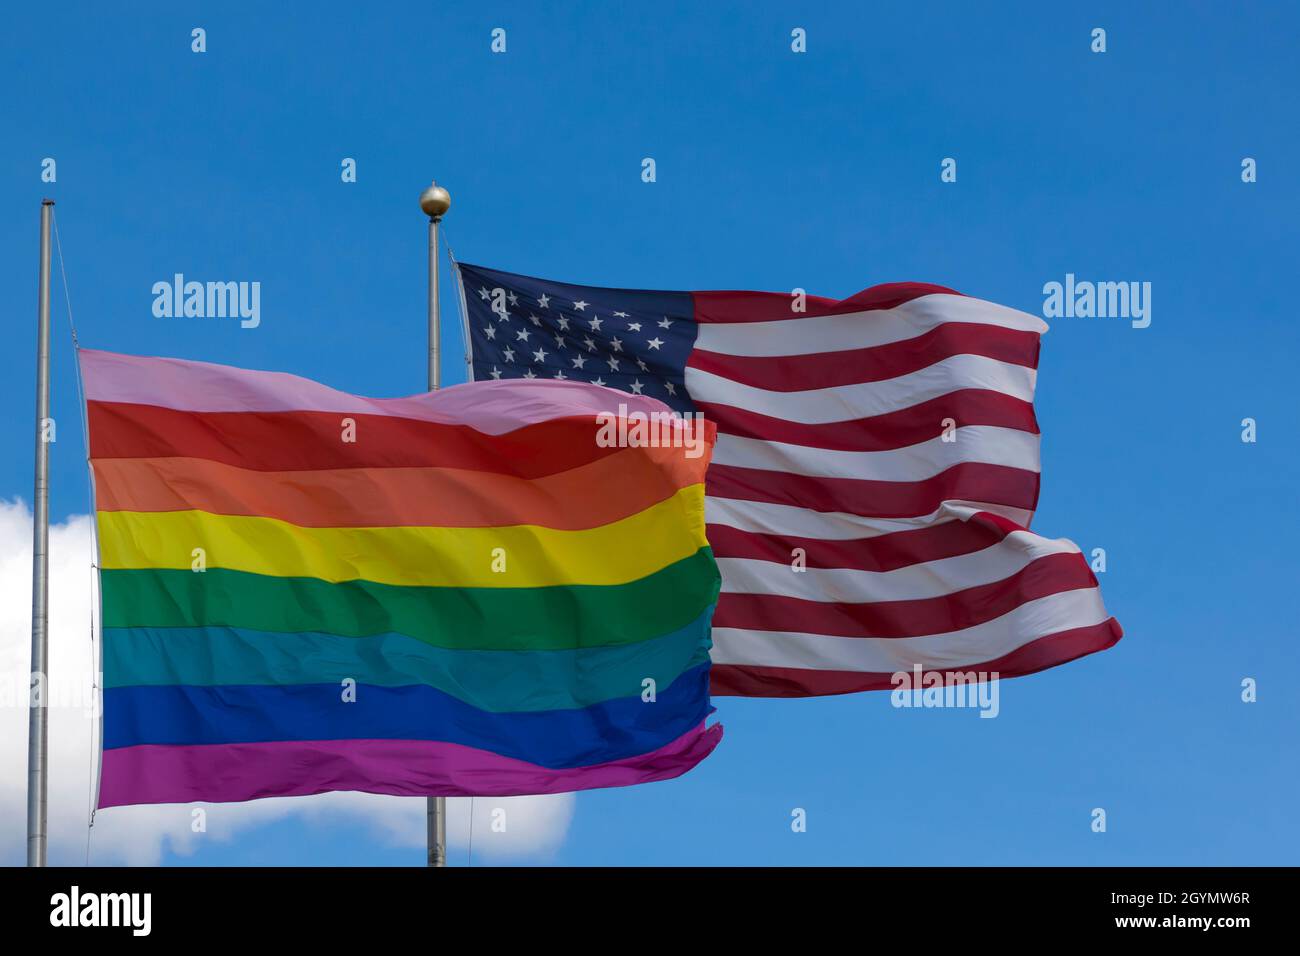 Bandiera arcobaleno/bandiera gay Pride (LGBT) che vola accanto alla bandiera americana su Cherry Grove, Fire Island, New York, Stati Uniti d'America. Foto Stock